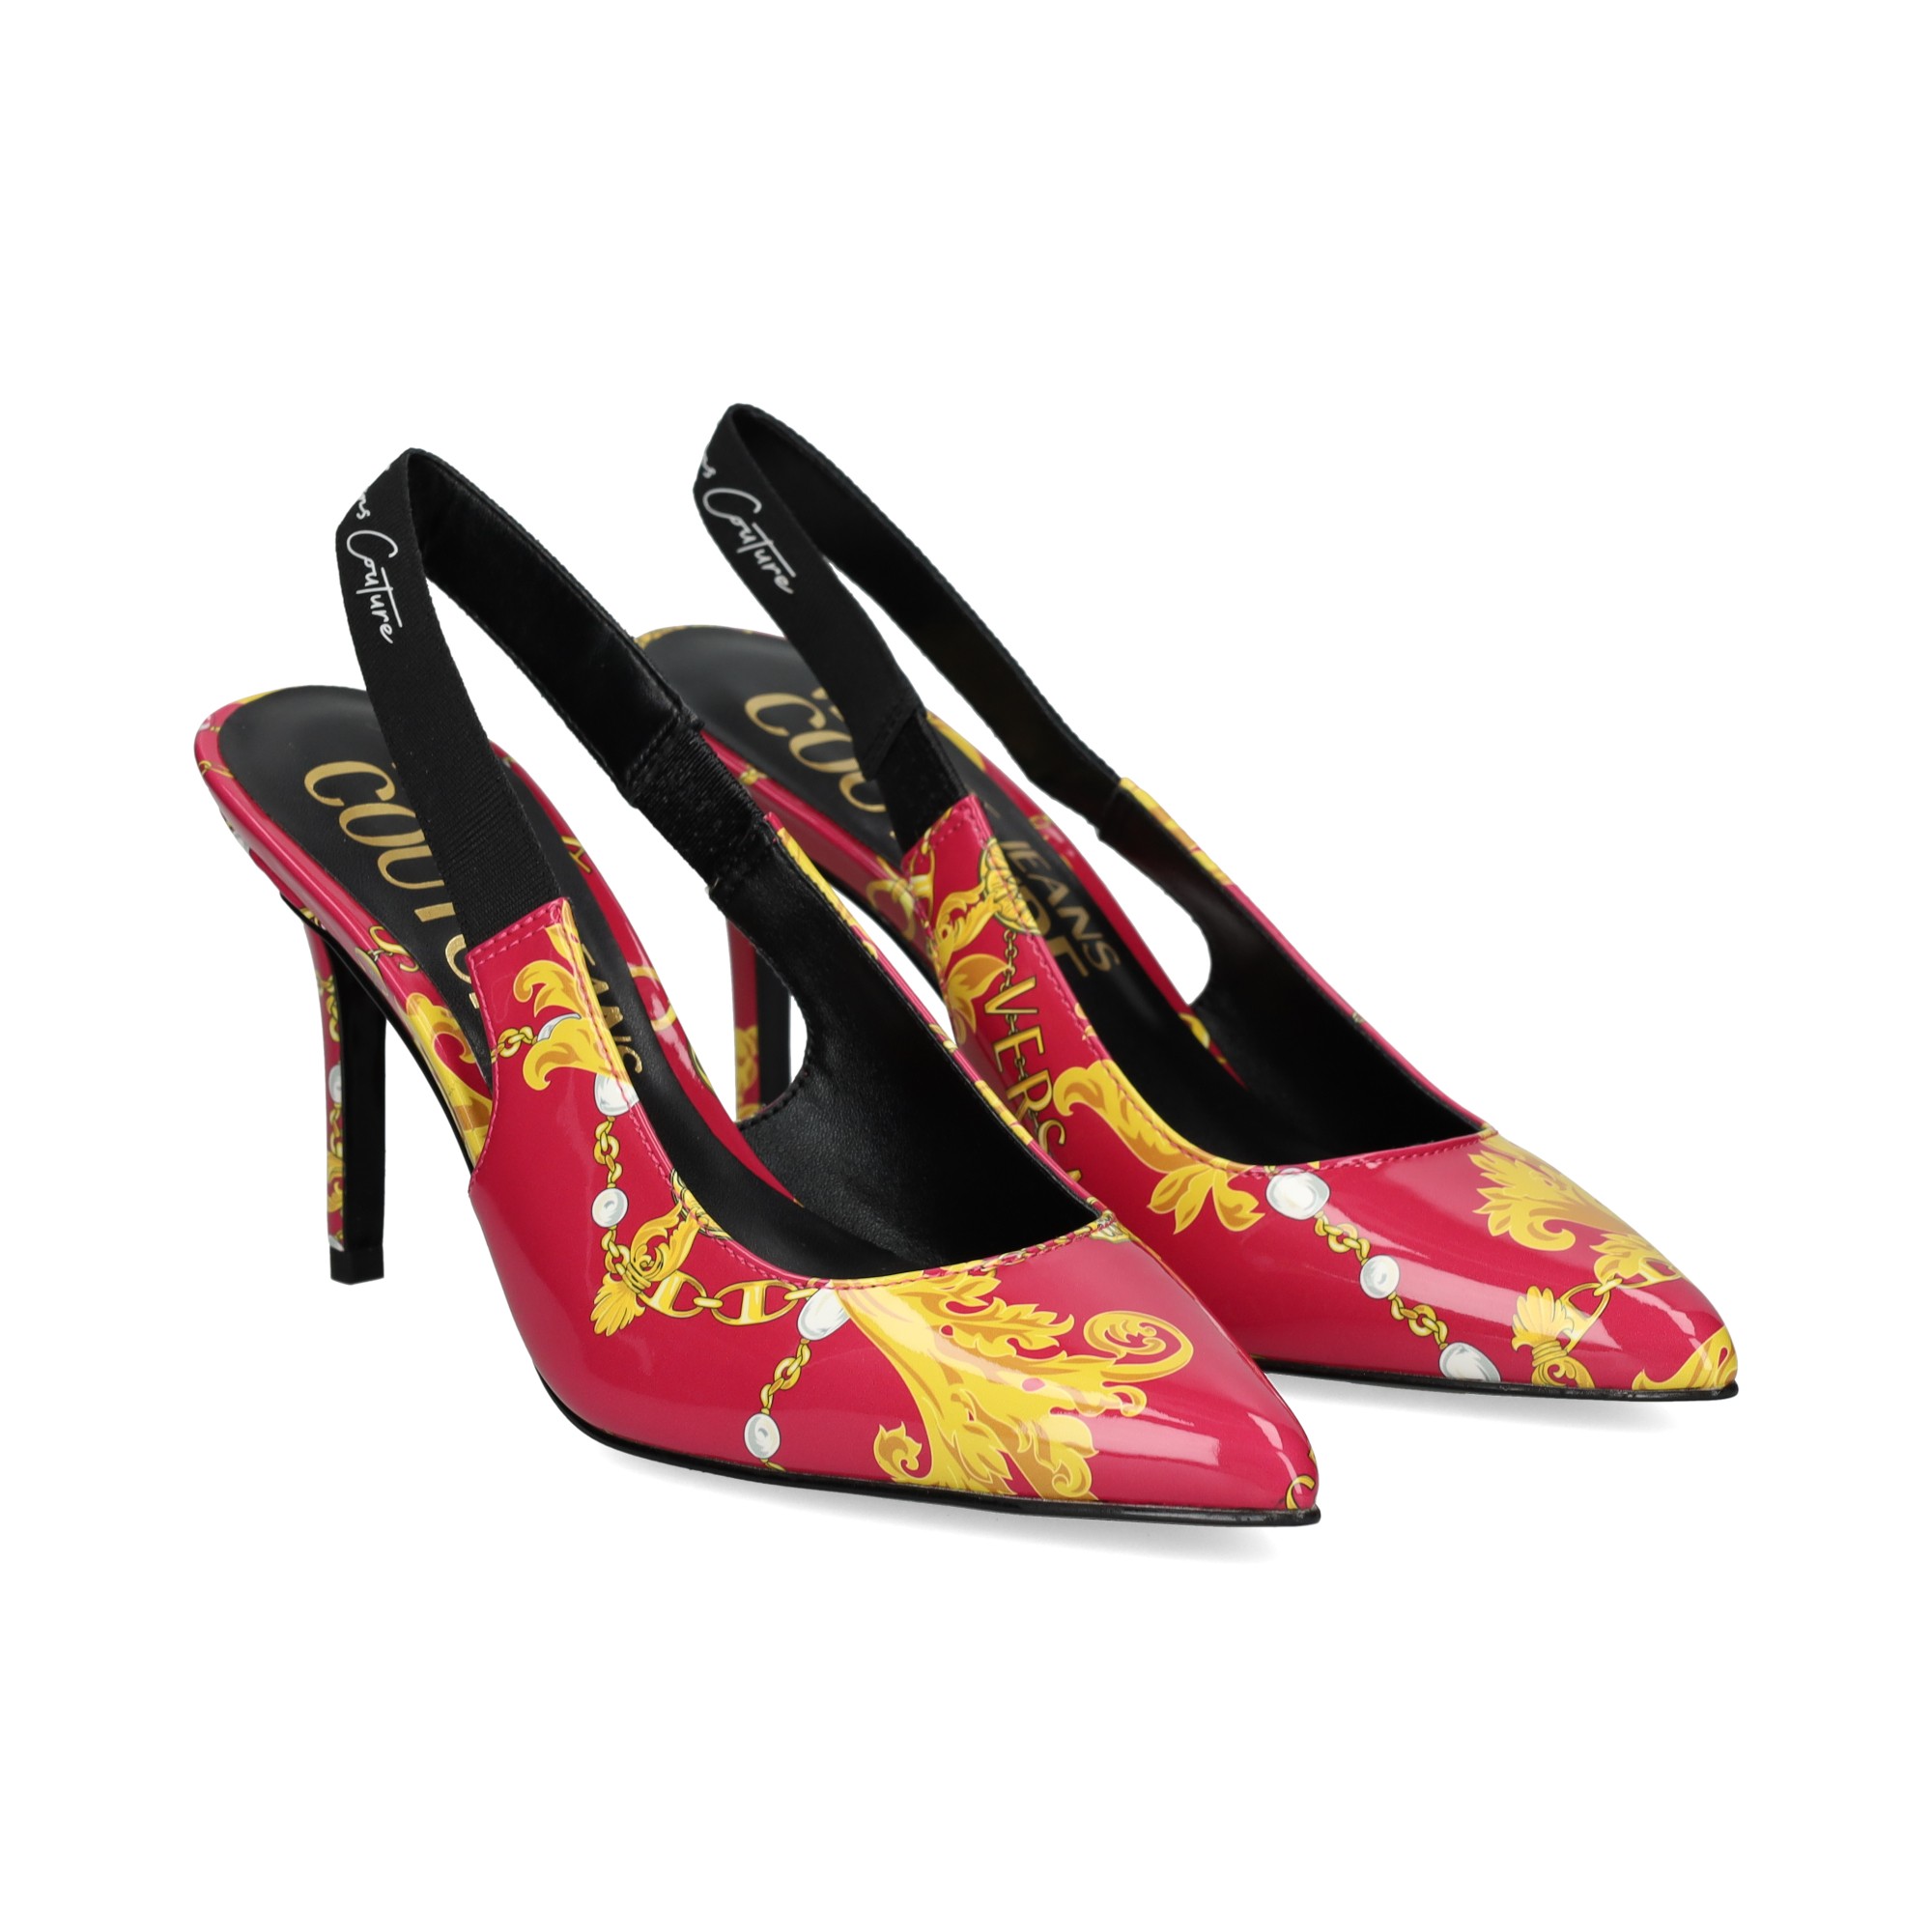 Woman Legs In Heels Shoes Handbag In Hand Stock Photo - Download Image Now  - Boot, Women, High Heels - iStock